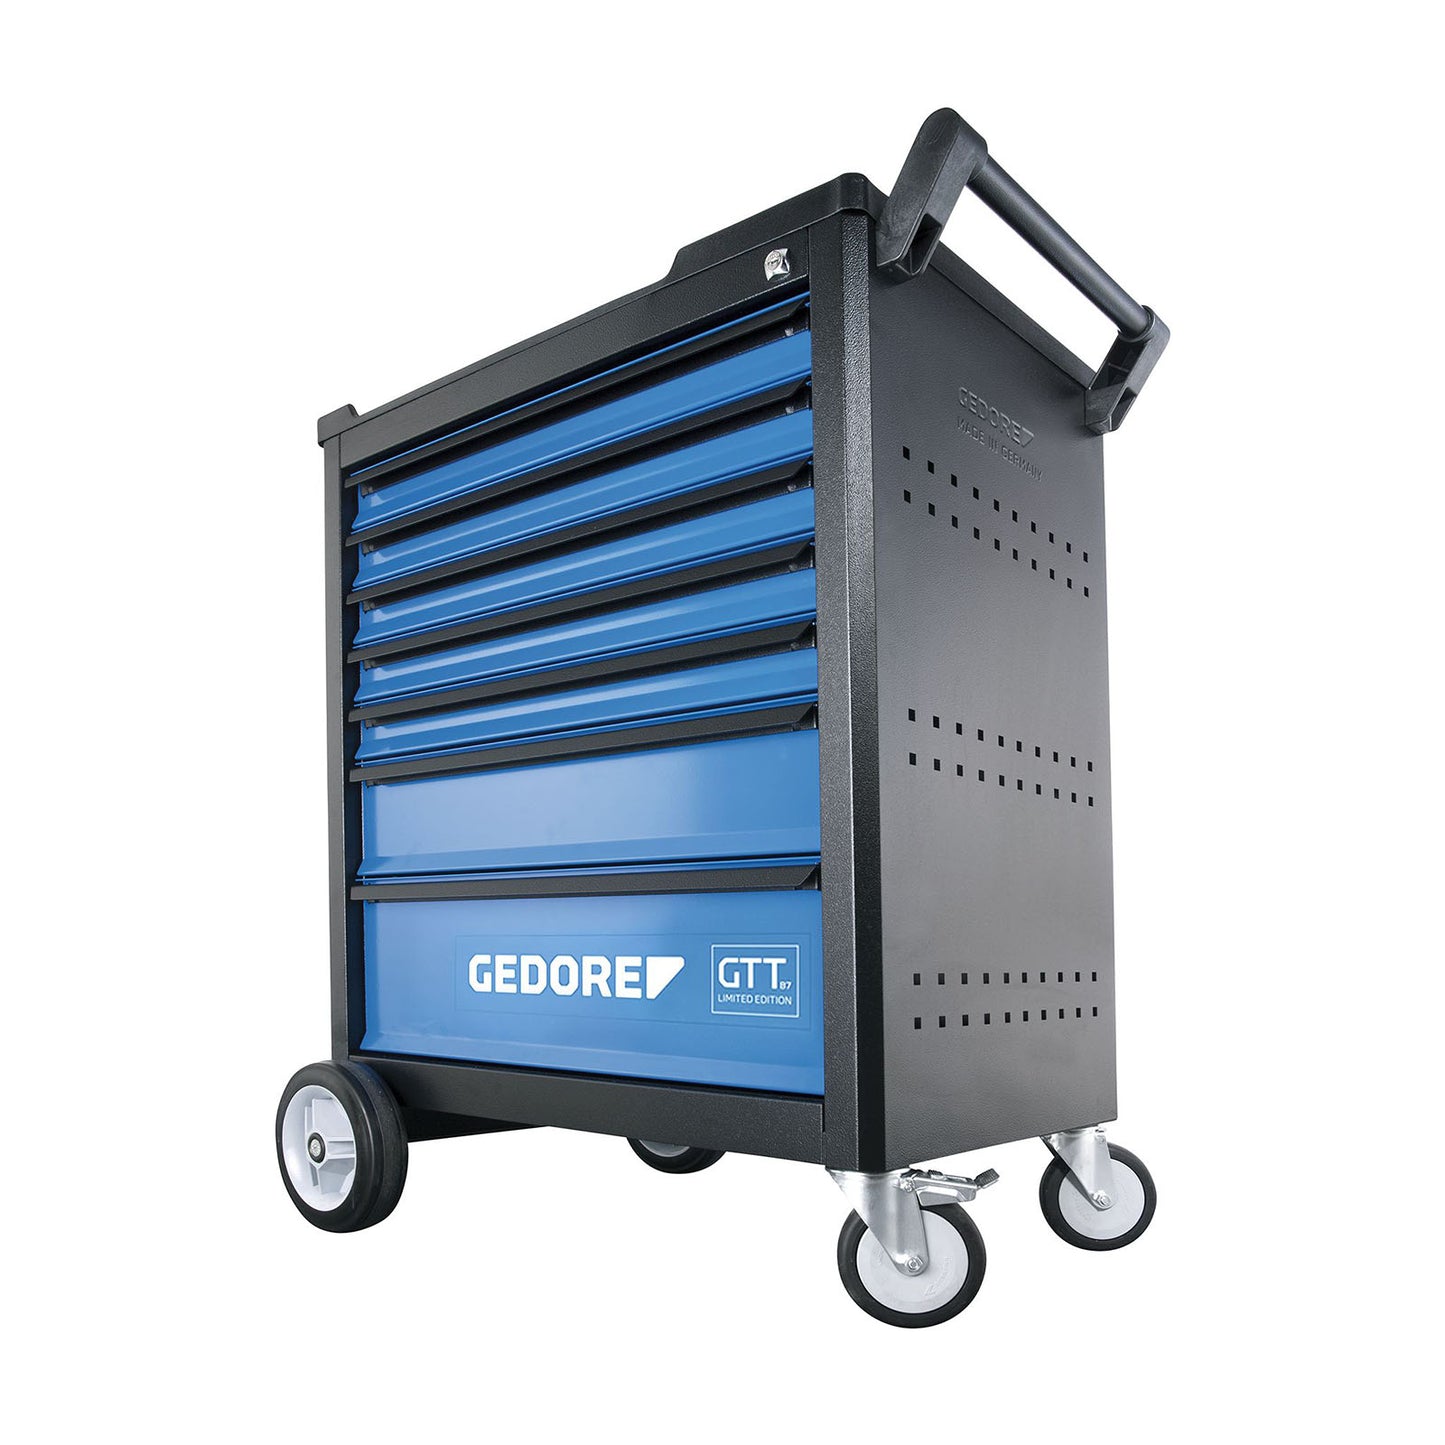 GEDORE GTT B7 - GTT B7 Trolley (3106659)